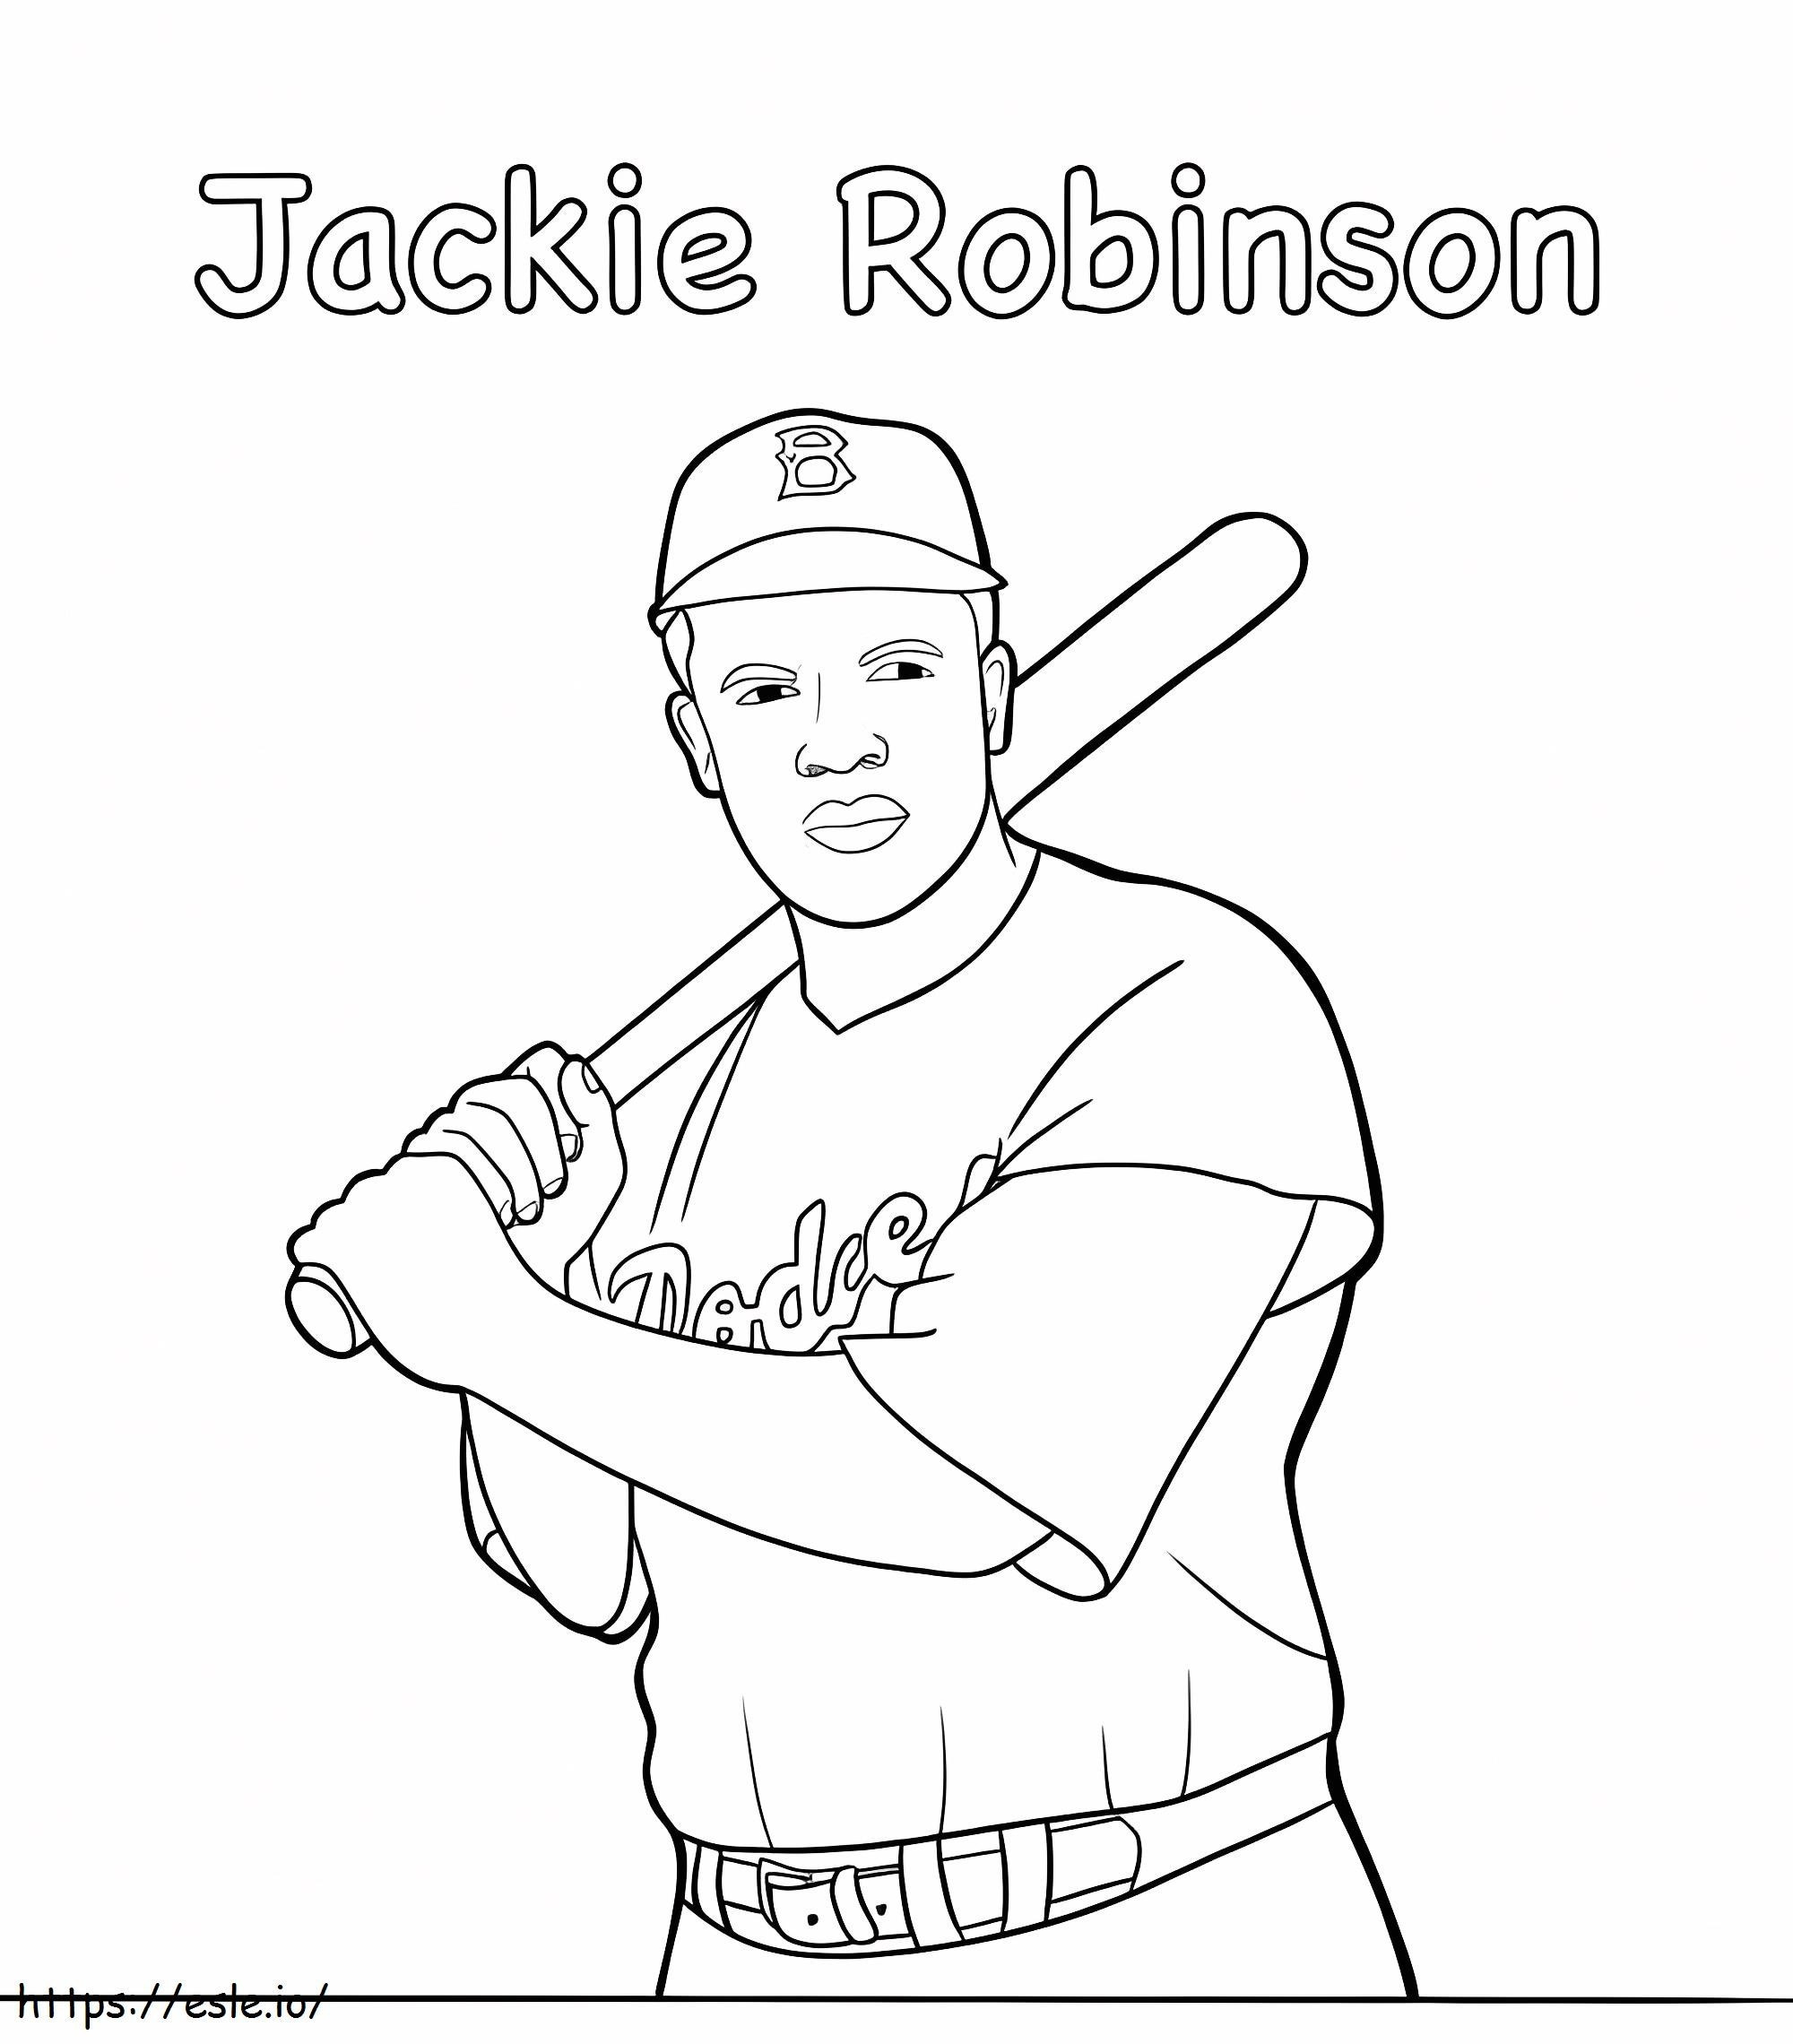 Jackie Robinson9 kleurplaat kleurplaat